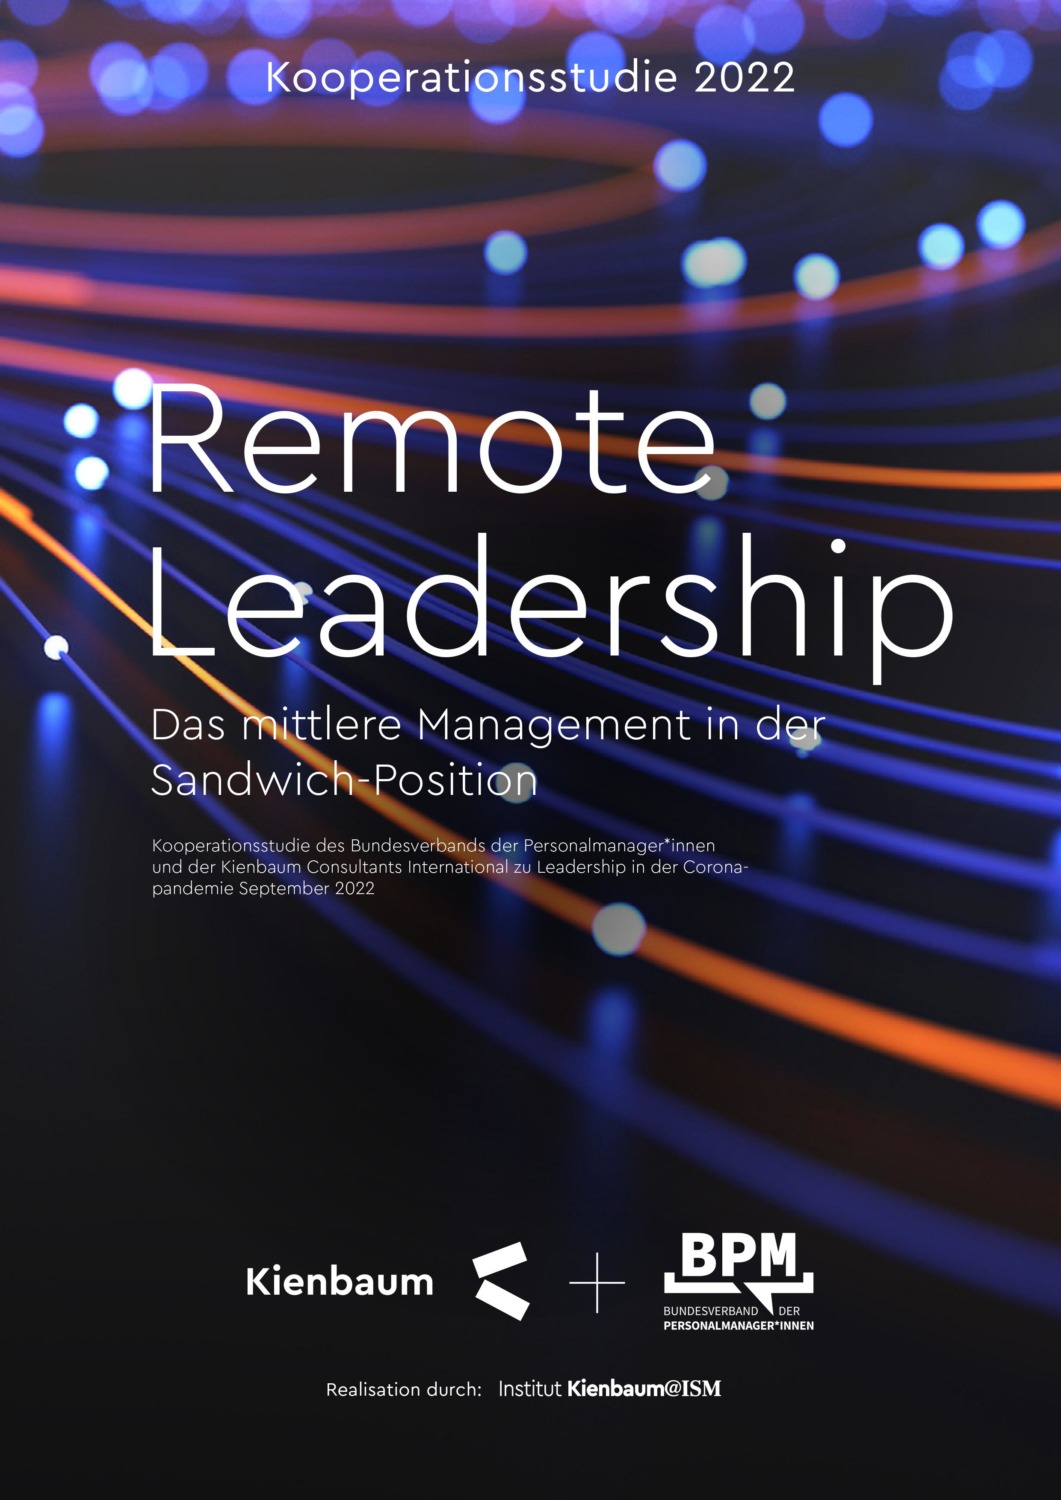 Remote Leadership – Das mittlere Management in der Sandwich-Position